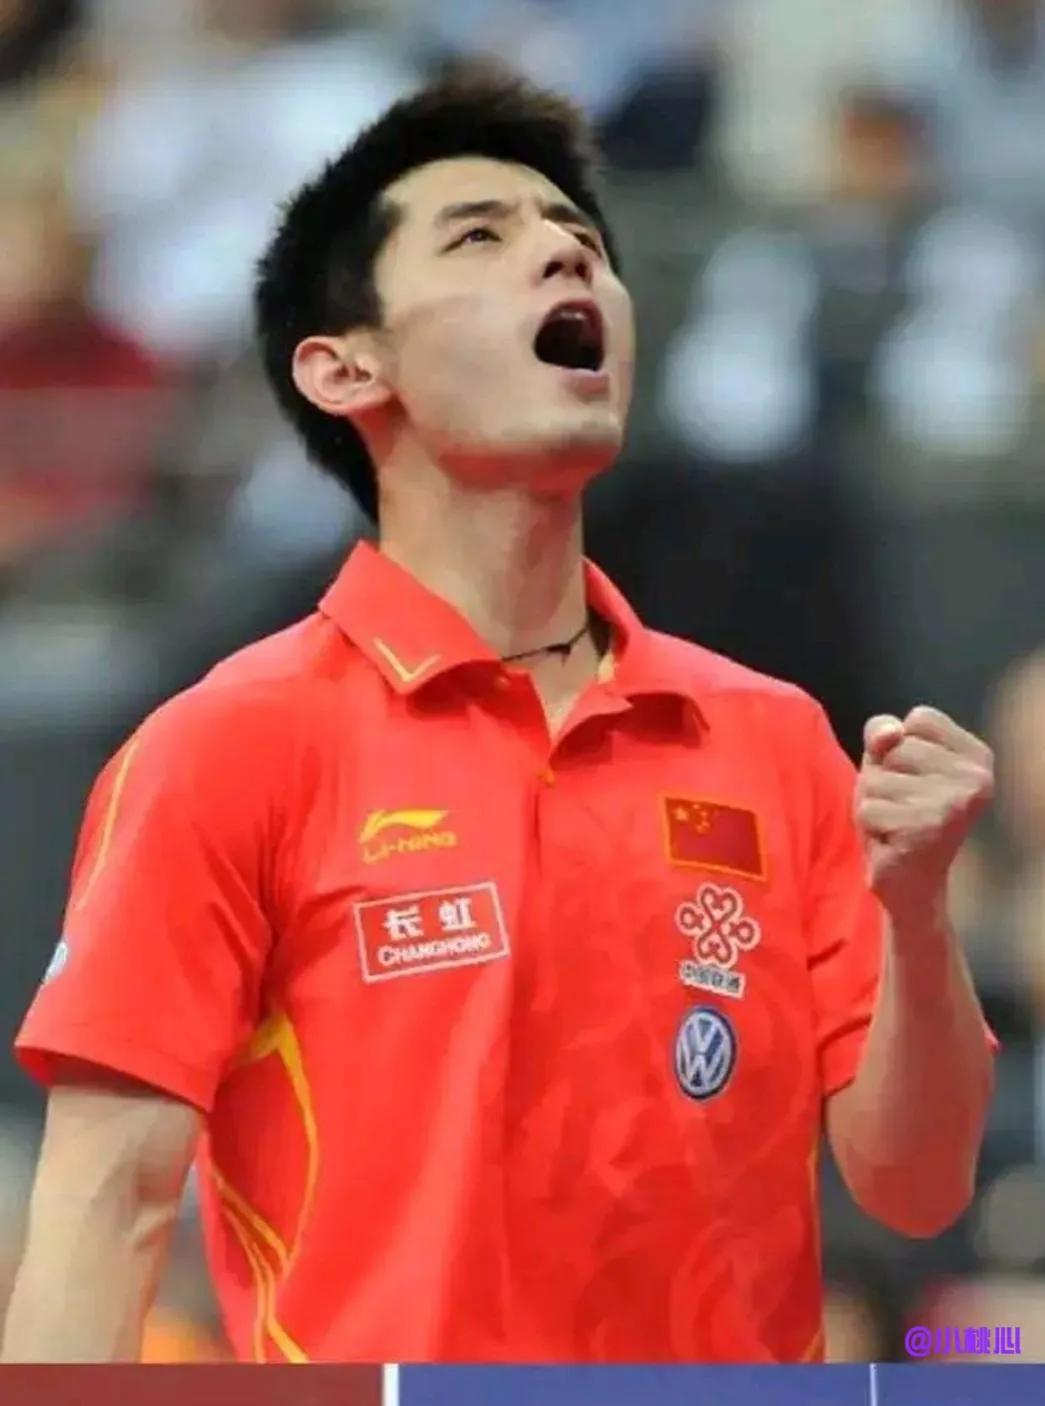 

非常非常的震惊，他是中国男子乒乓球史上第三位大满贯选手，也是乒乓球史上第七位